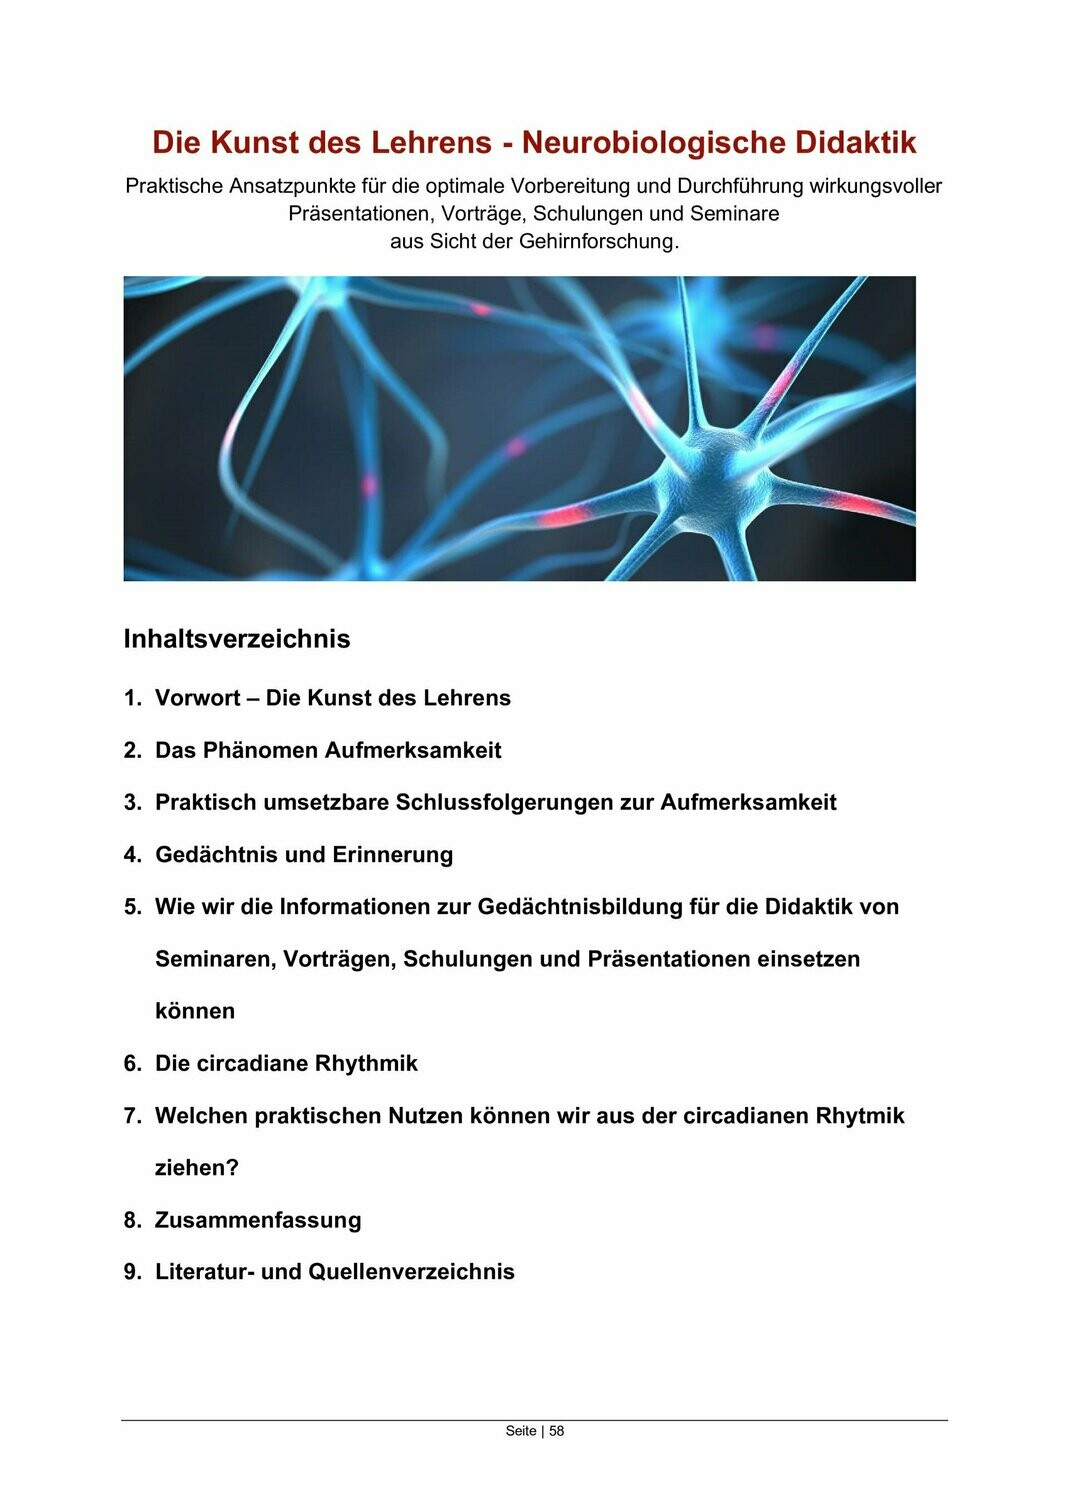 Die Kunst des Lehrens - Neurobiologische Didaktik (eBook - 32 Seiten)